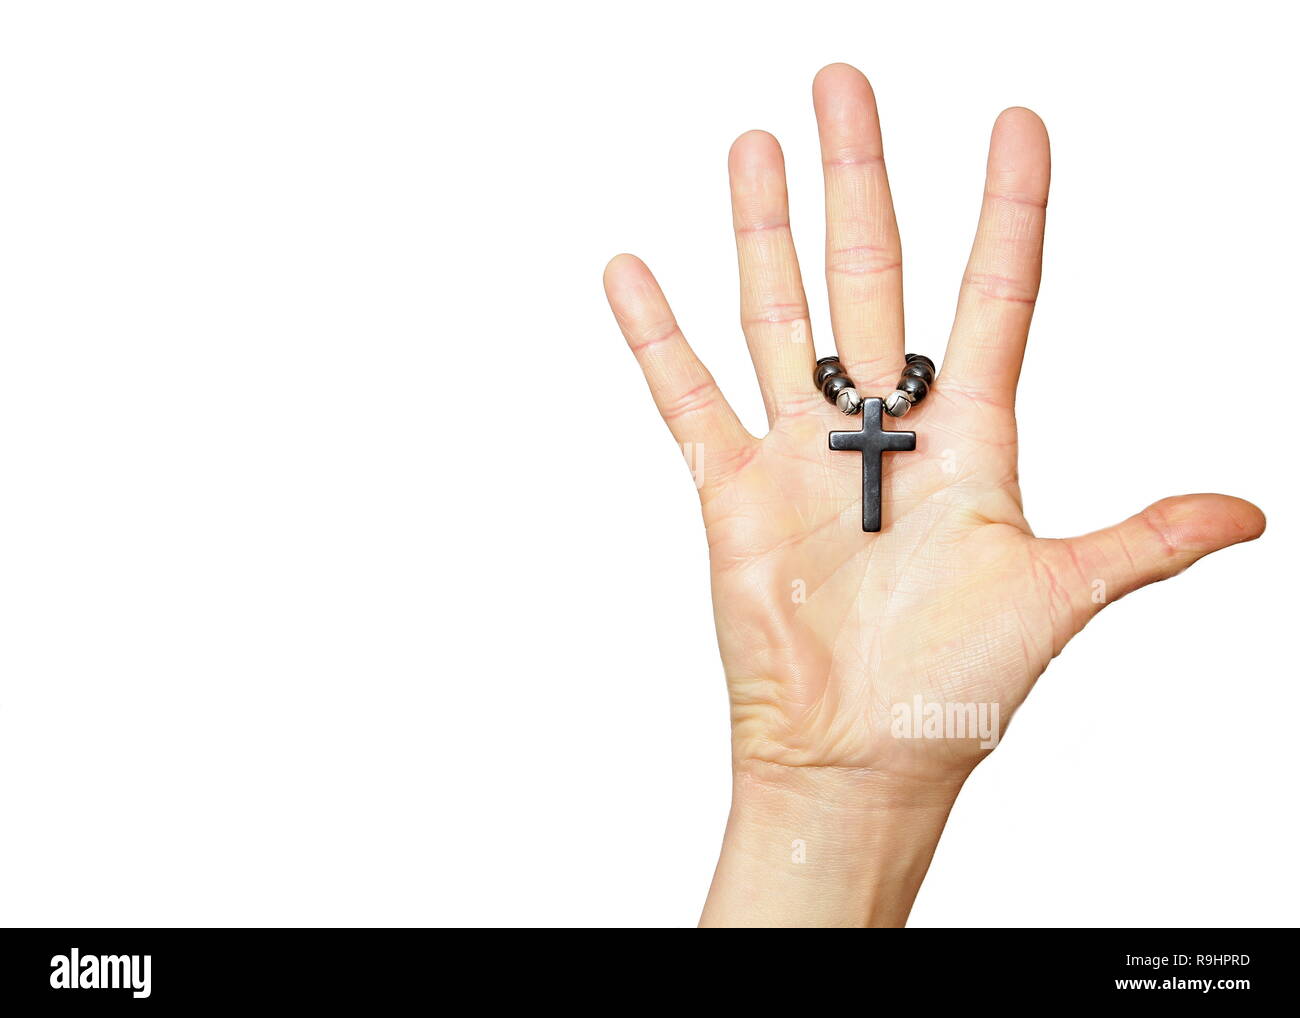 Hände zusammen beten zu gott Stock Foto Stockfoto